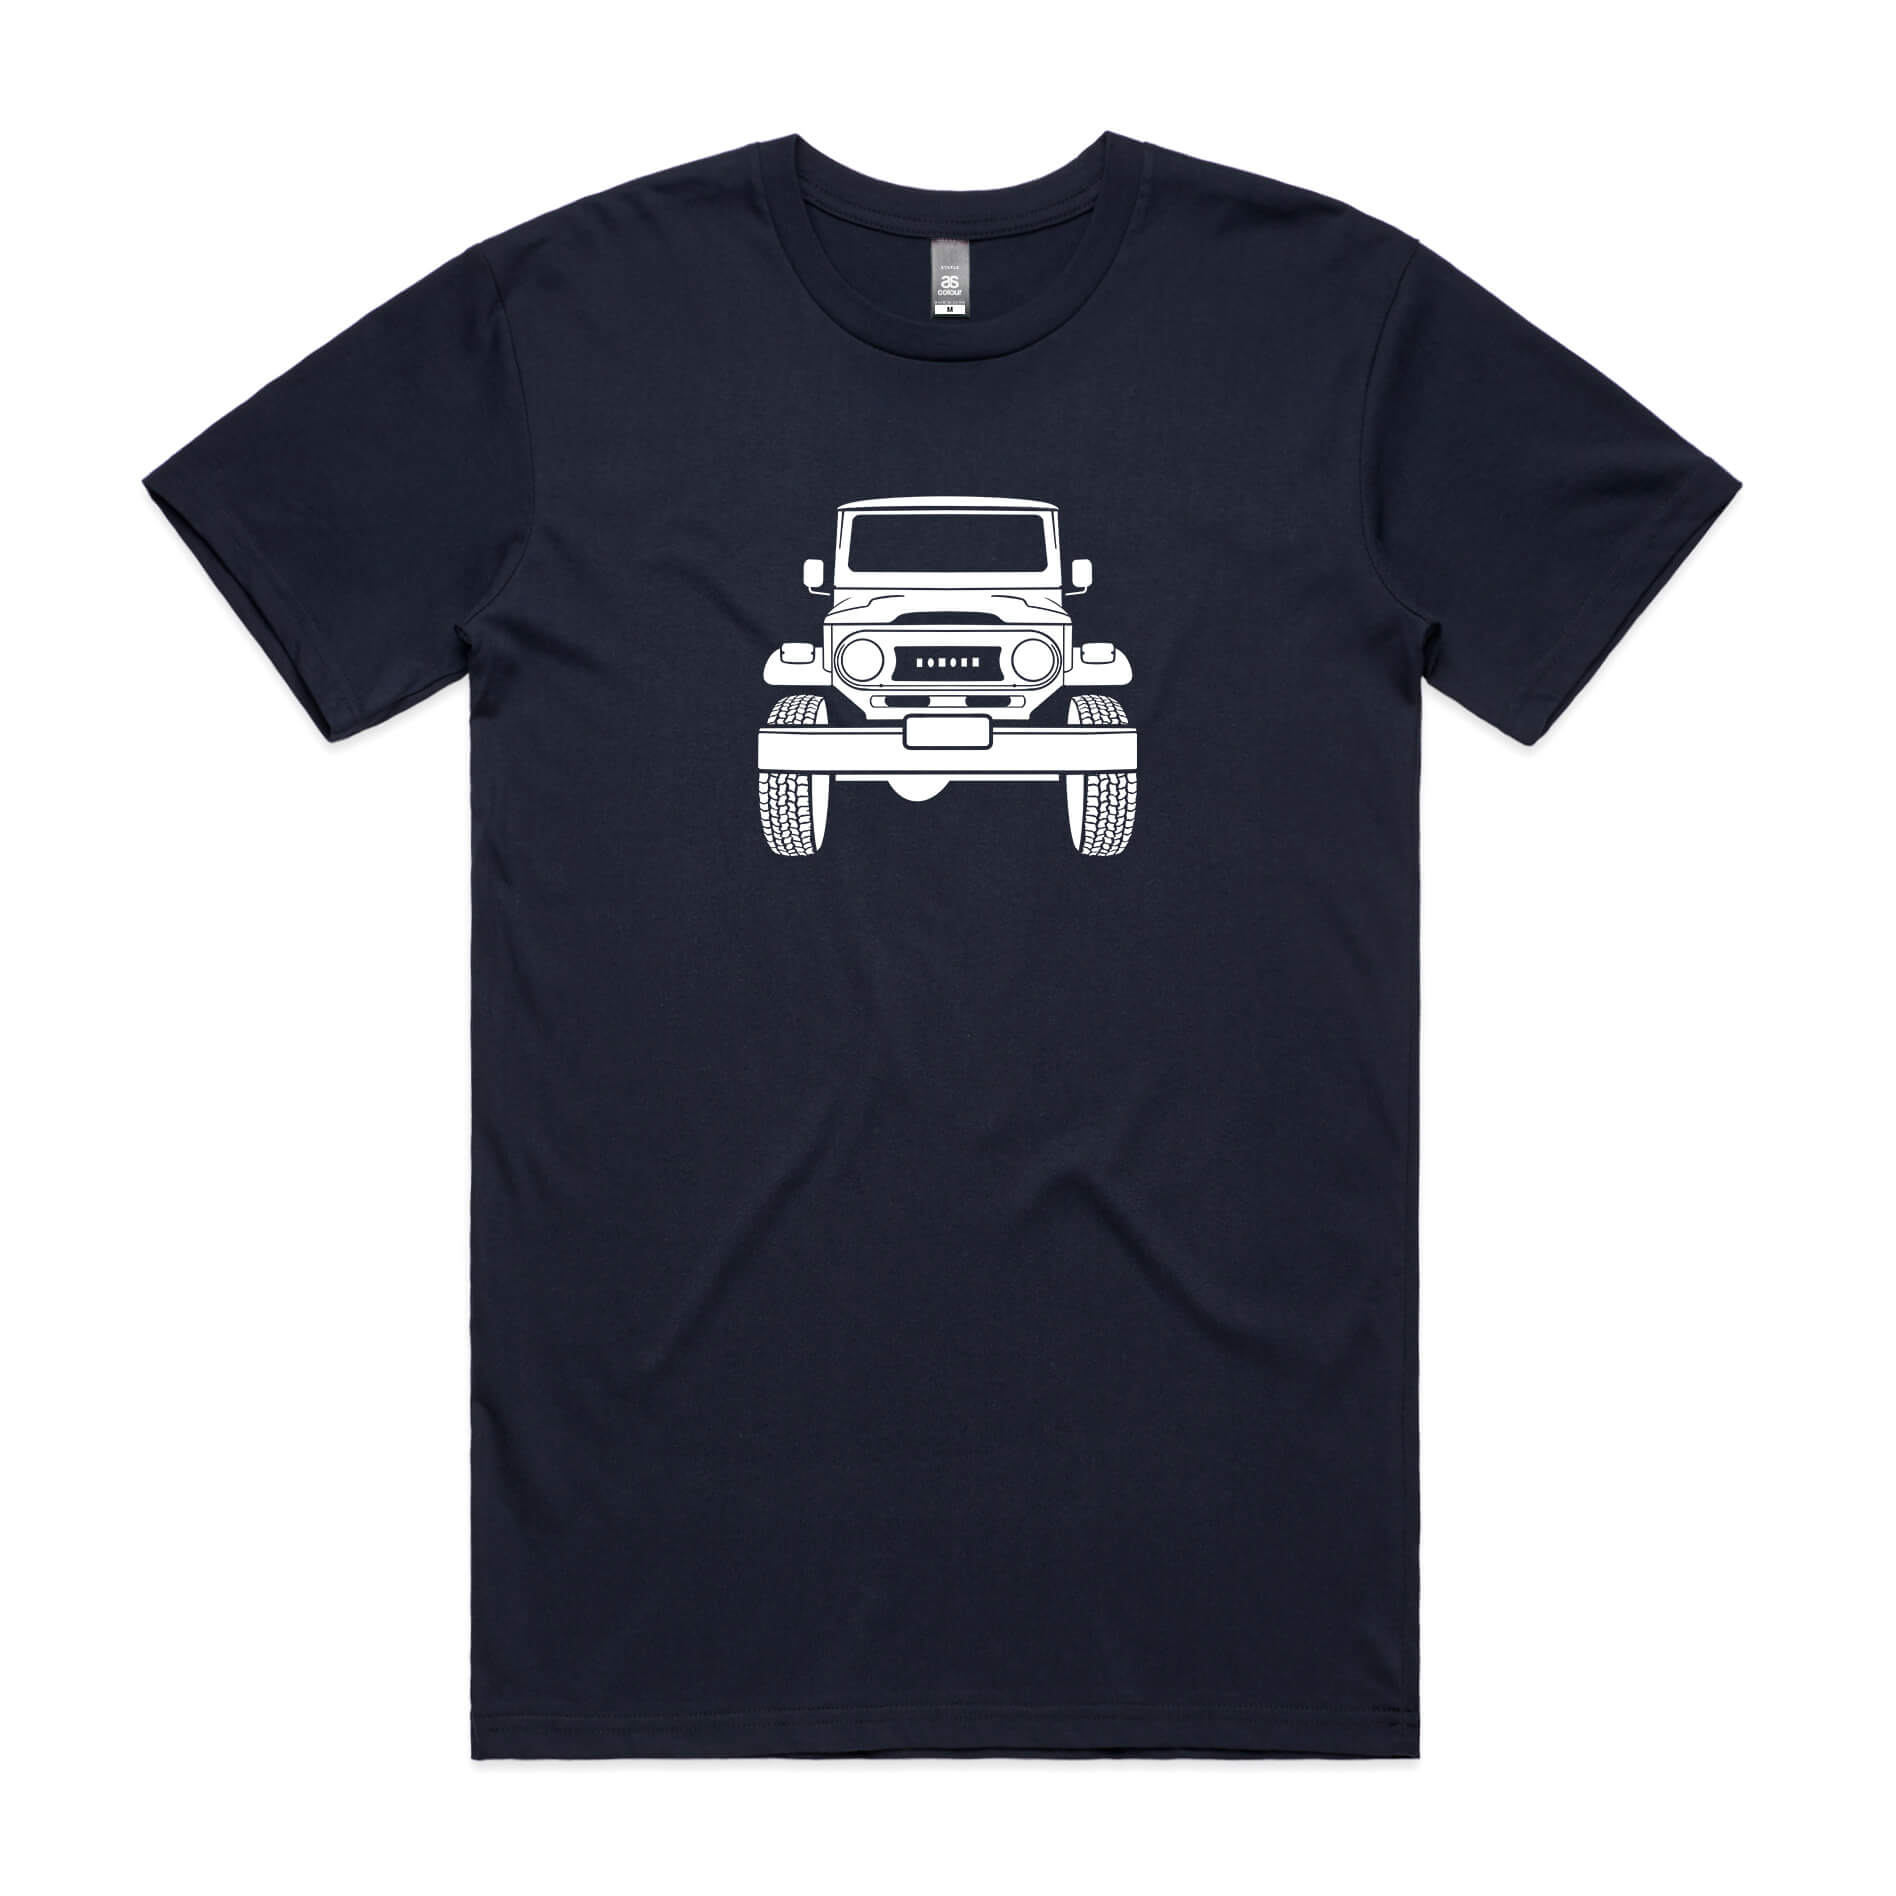 Toyota LandCruiser FJ40 t-shirt in navy blue